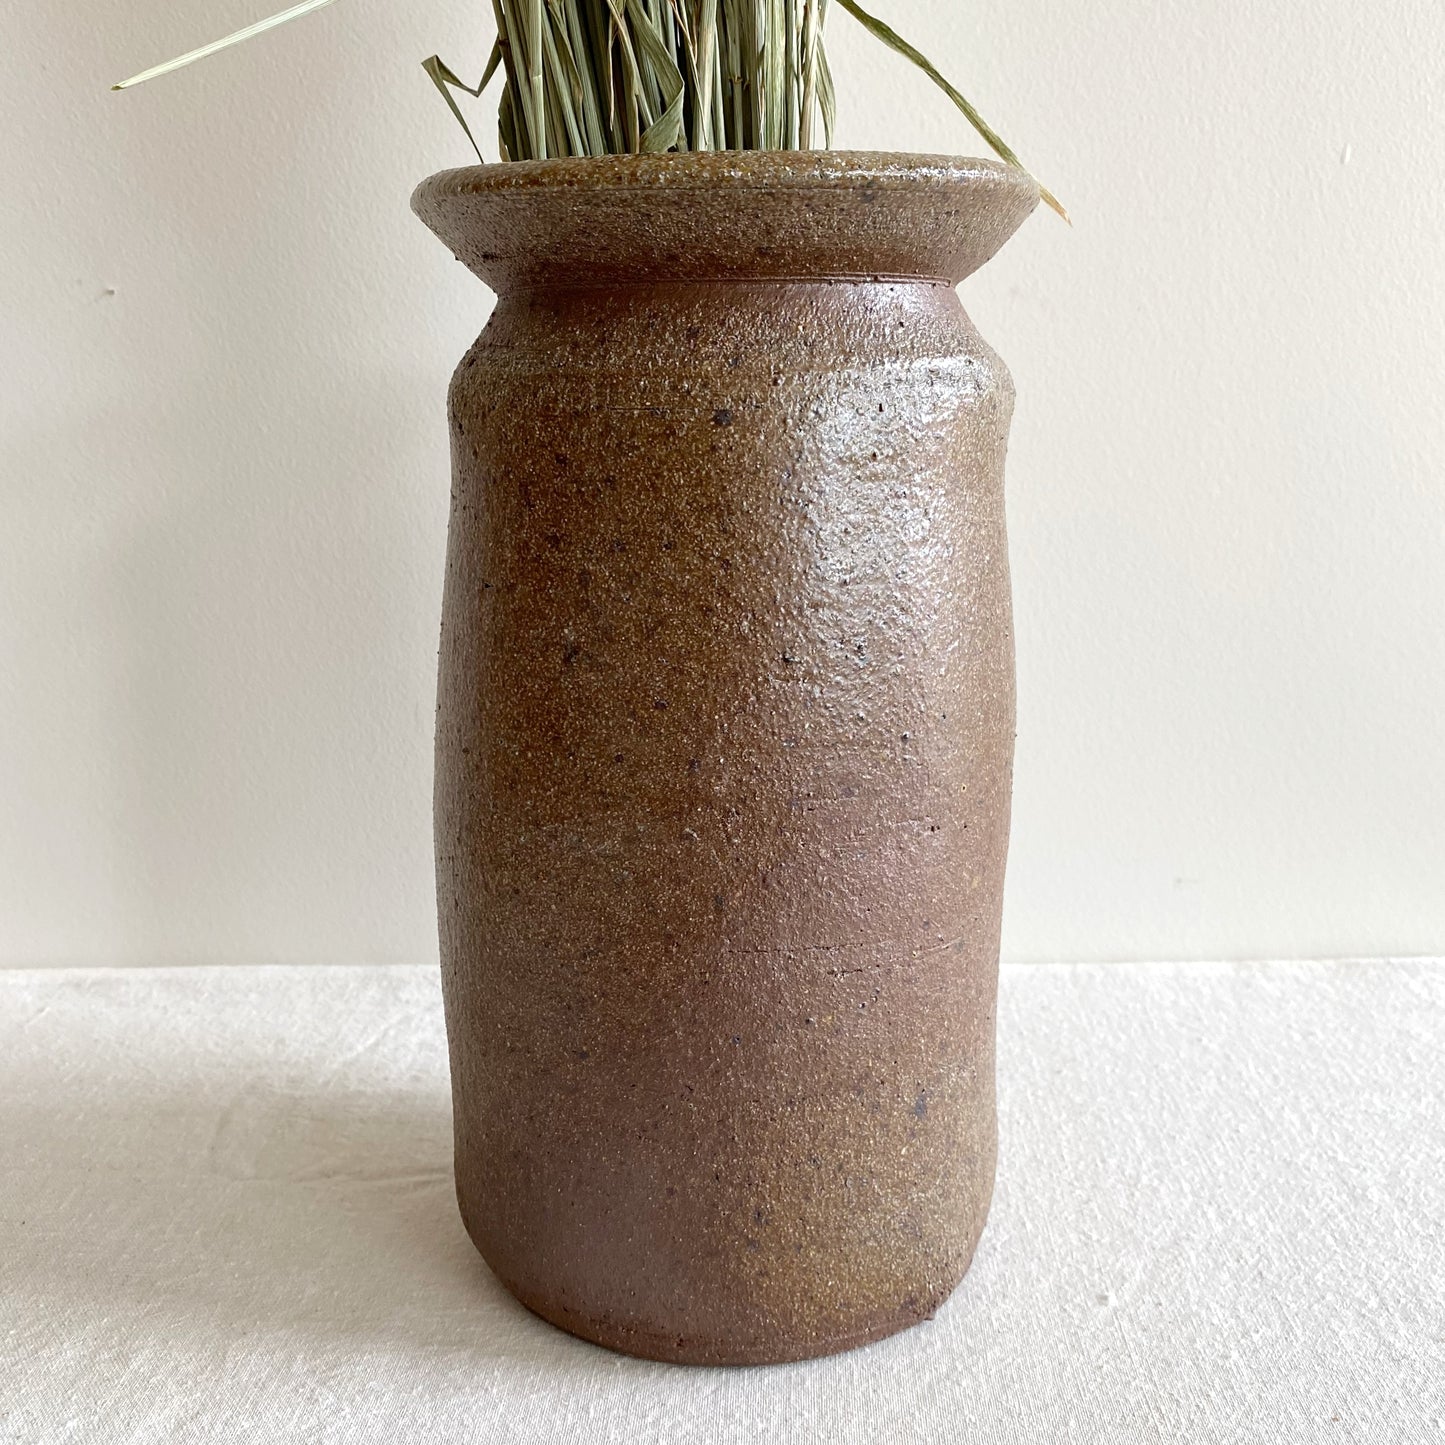 XL Vintage Textured Stoneware Vase, 11.25”